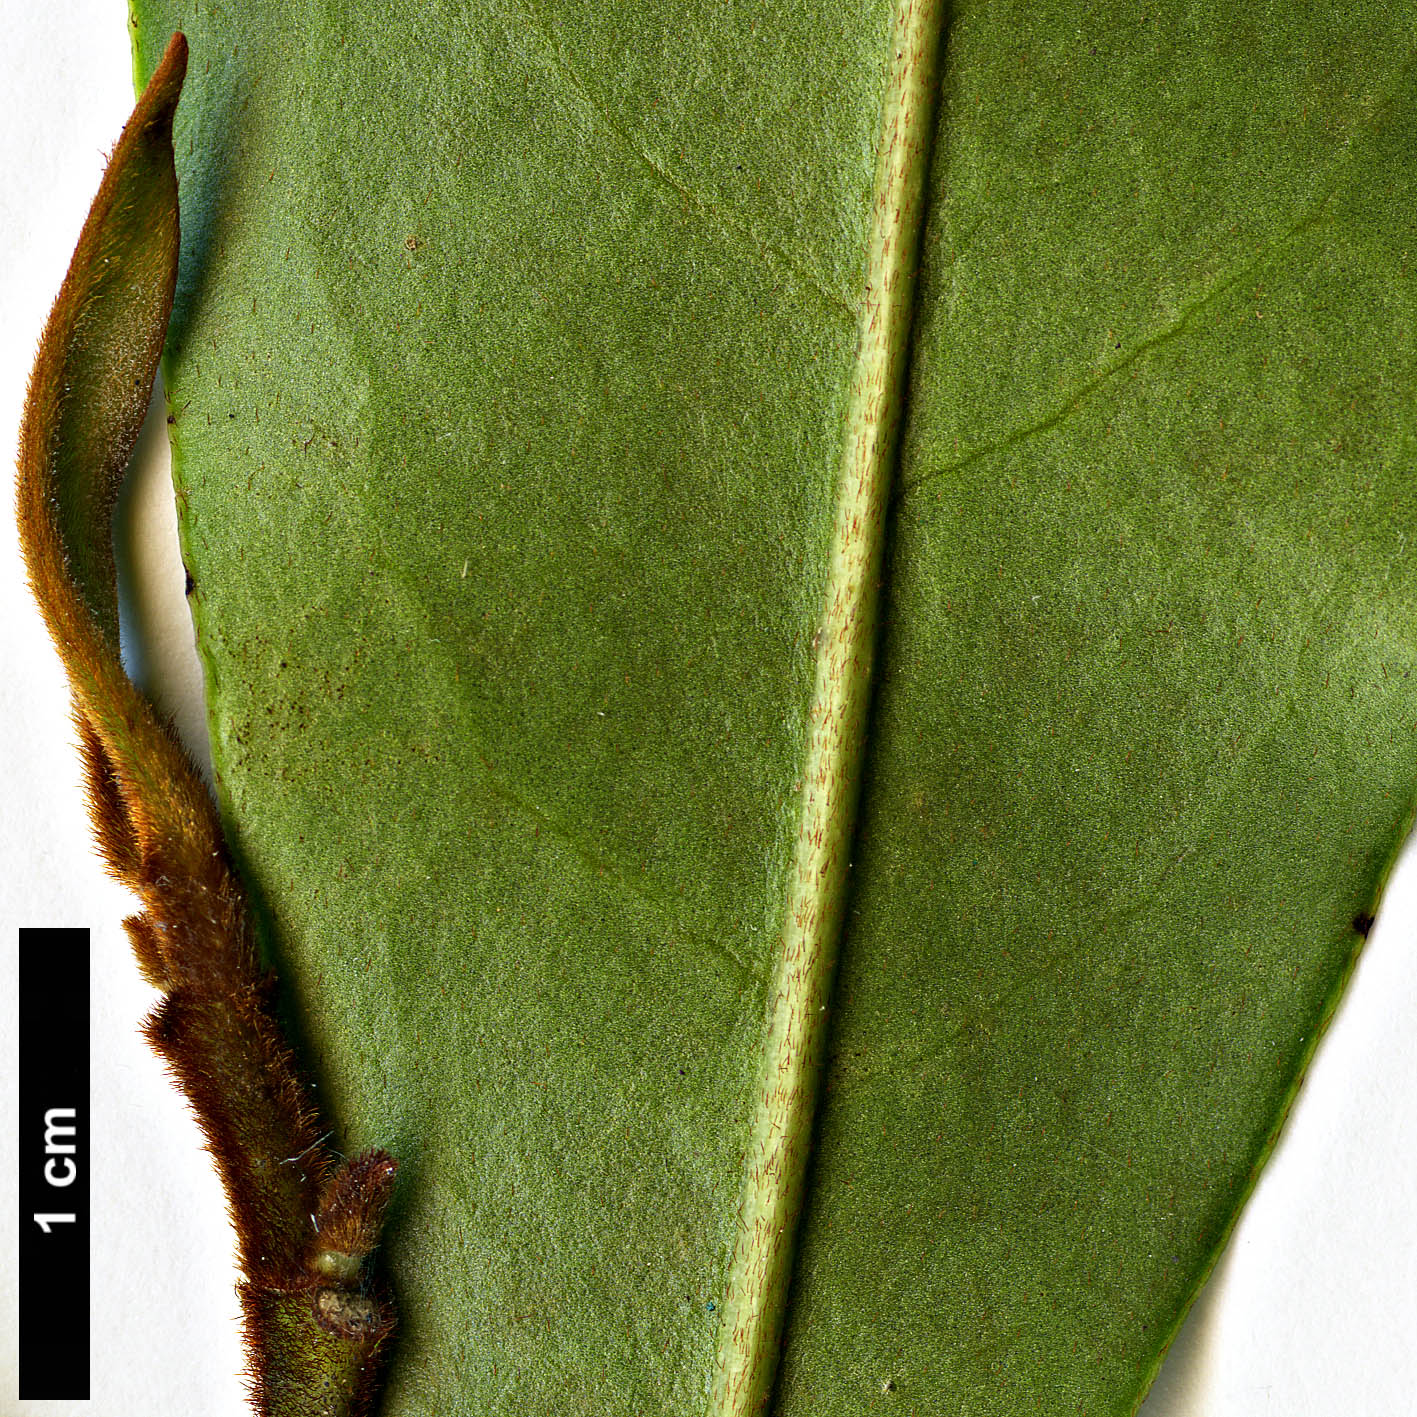 High resolution image: Family: Magnoliaceae - Genus: Magnolia - Taxon: figo